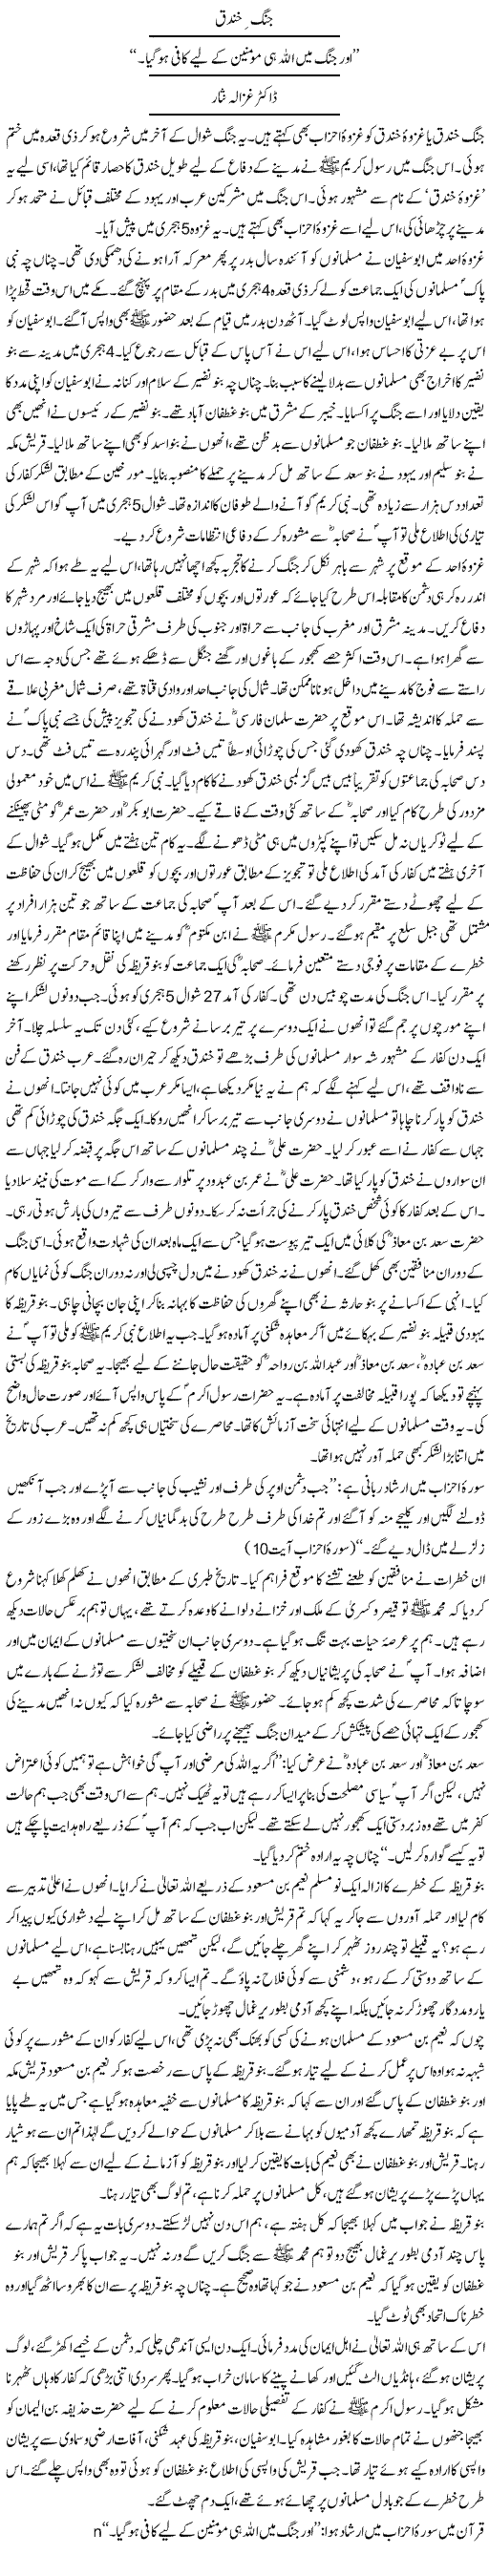 Ghazwa E Khandaq History In Urdu Pdf Freel